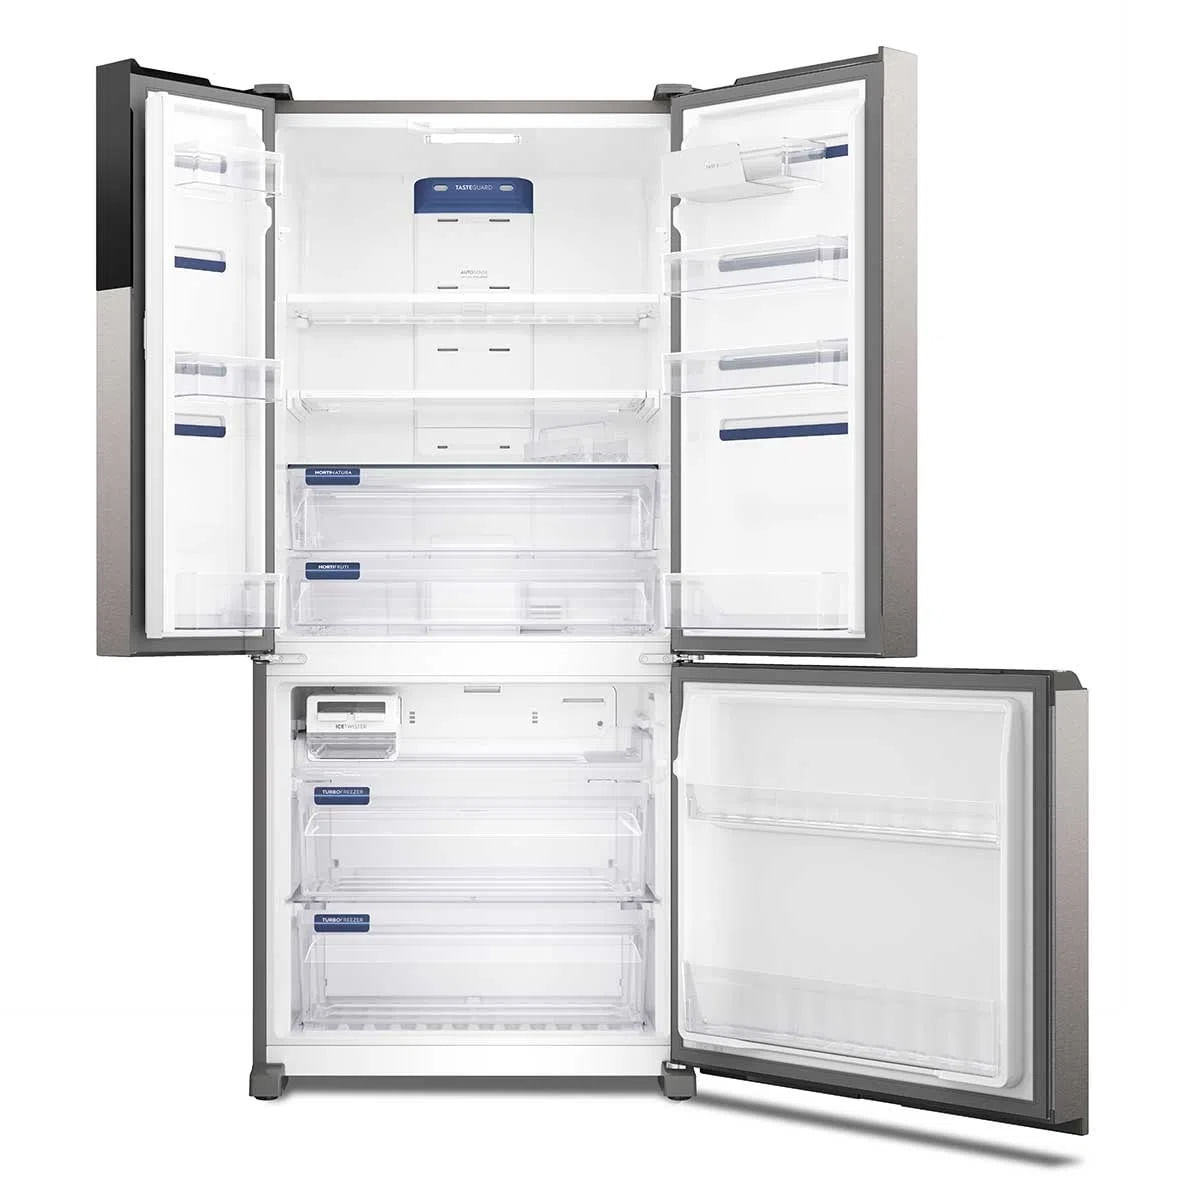 geladeira-electrolux-3-portas-inverter-com-autosense-efficient-im8s-ff3p-590l-x-110v-3.jpg